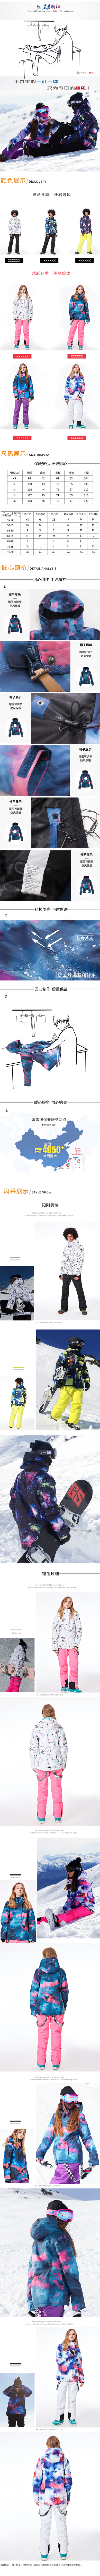 淘宝美工叶凡手绘 男女款 滑雪服  简单大方  清晰 明了  时尚 健康 冬季 必备作品